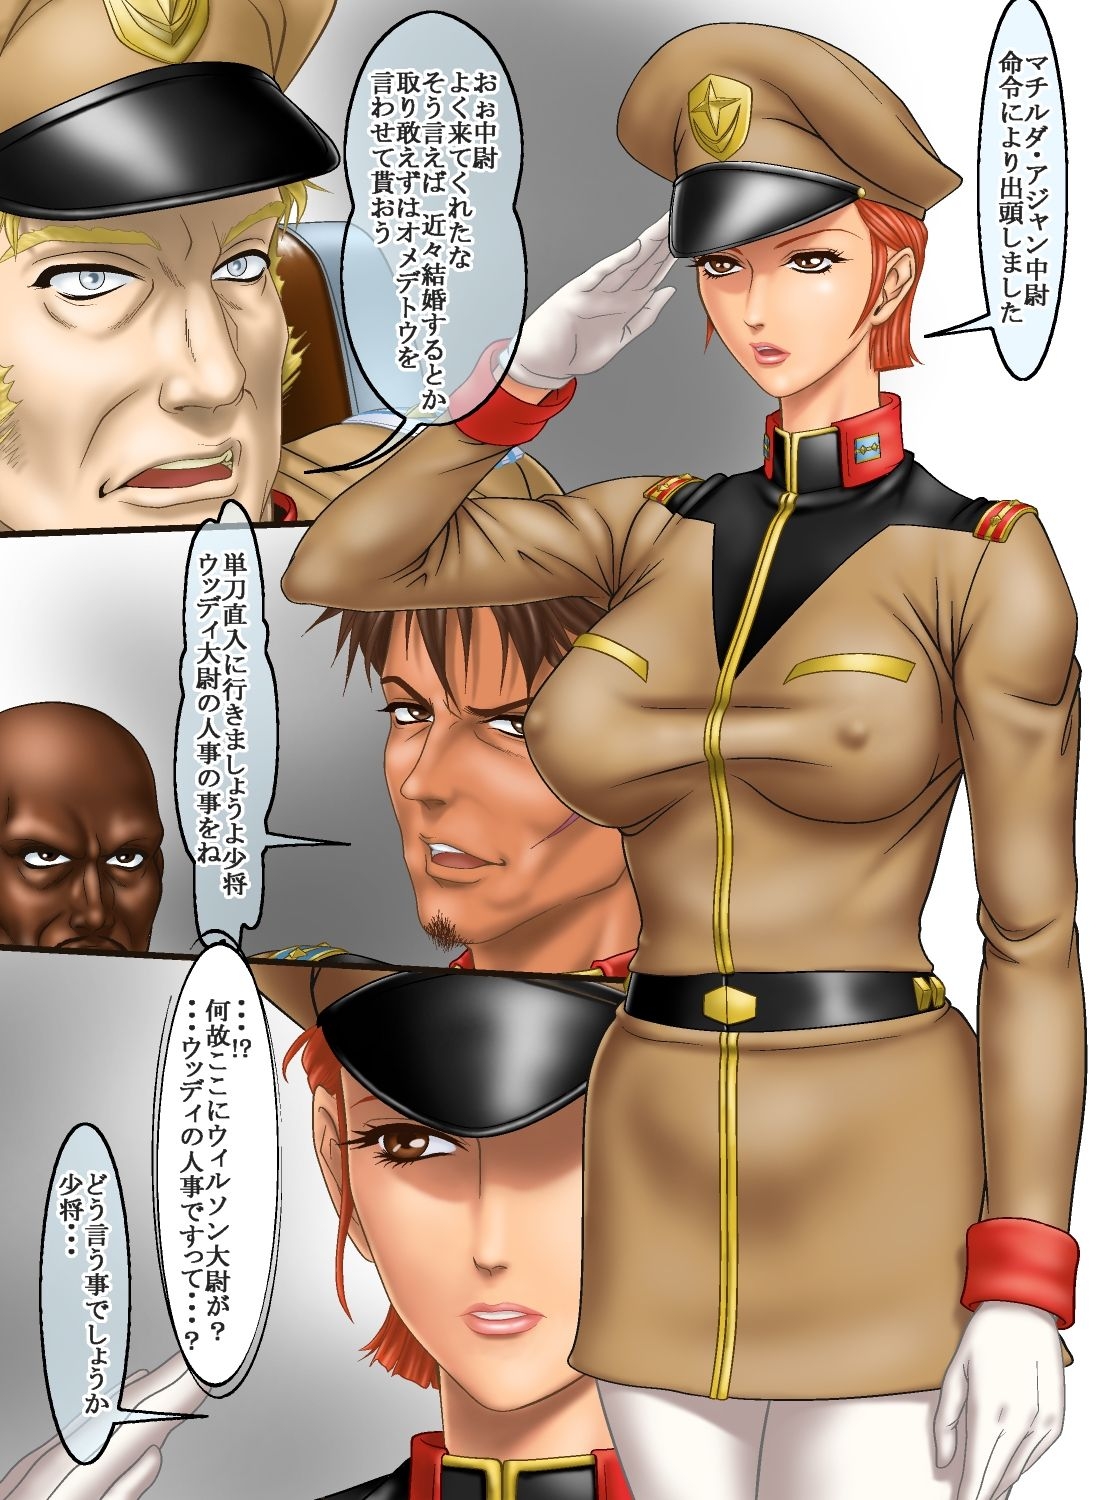 [Rippadou] Frontline no Onna-tachi 2 Matilda Ajan no Harassment Seikatsu-hen (Mobile Suit Gundam) 1